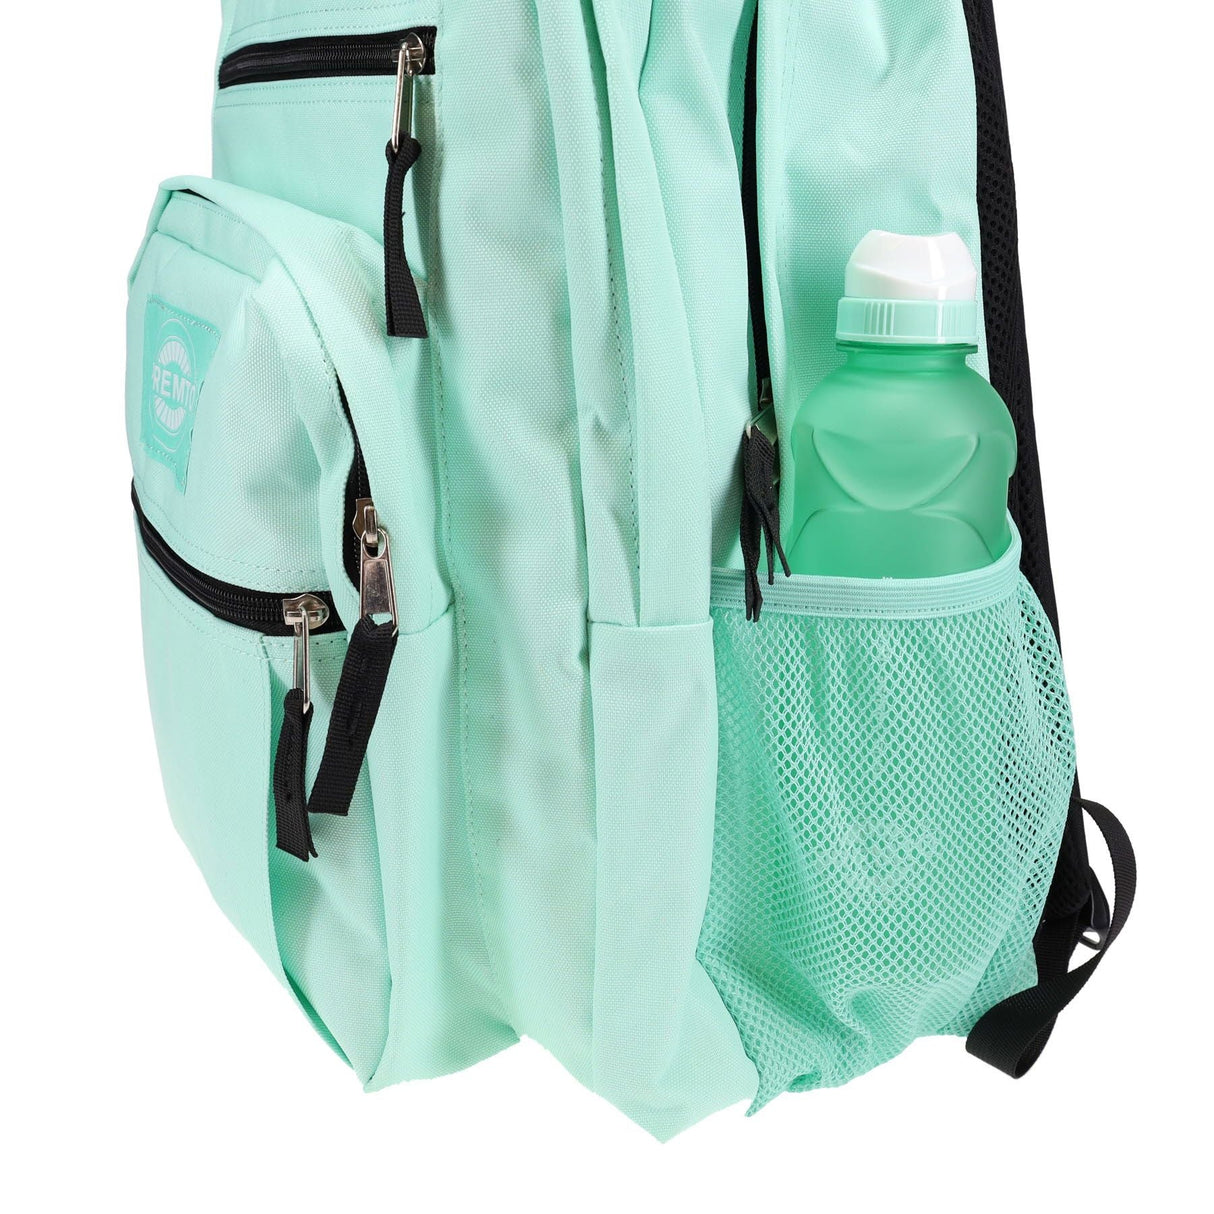 Premto 34L Backpack - Mint Magic-Backpacks-Premto|StationeryShop.co.uk